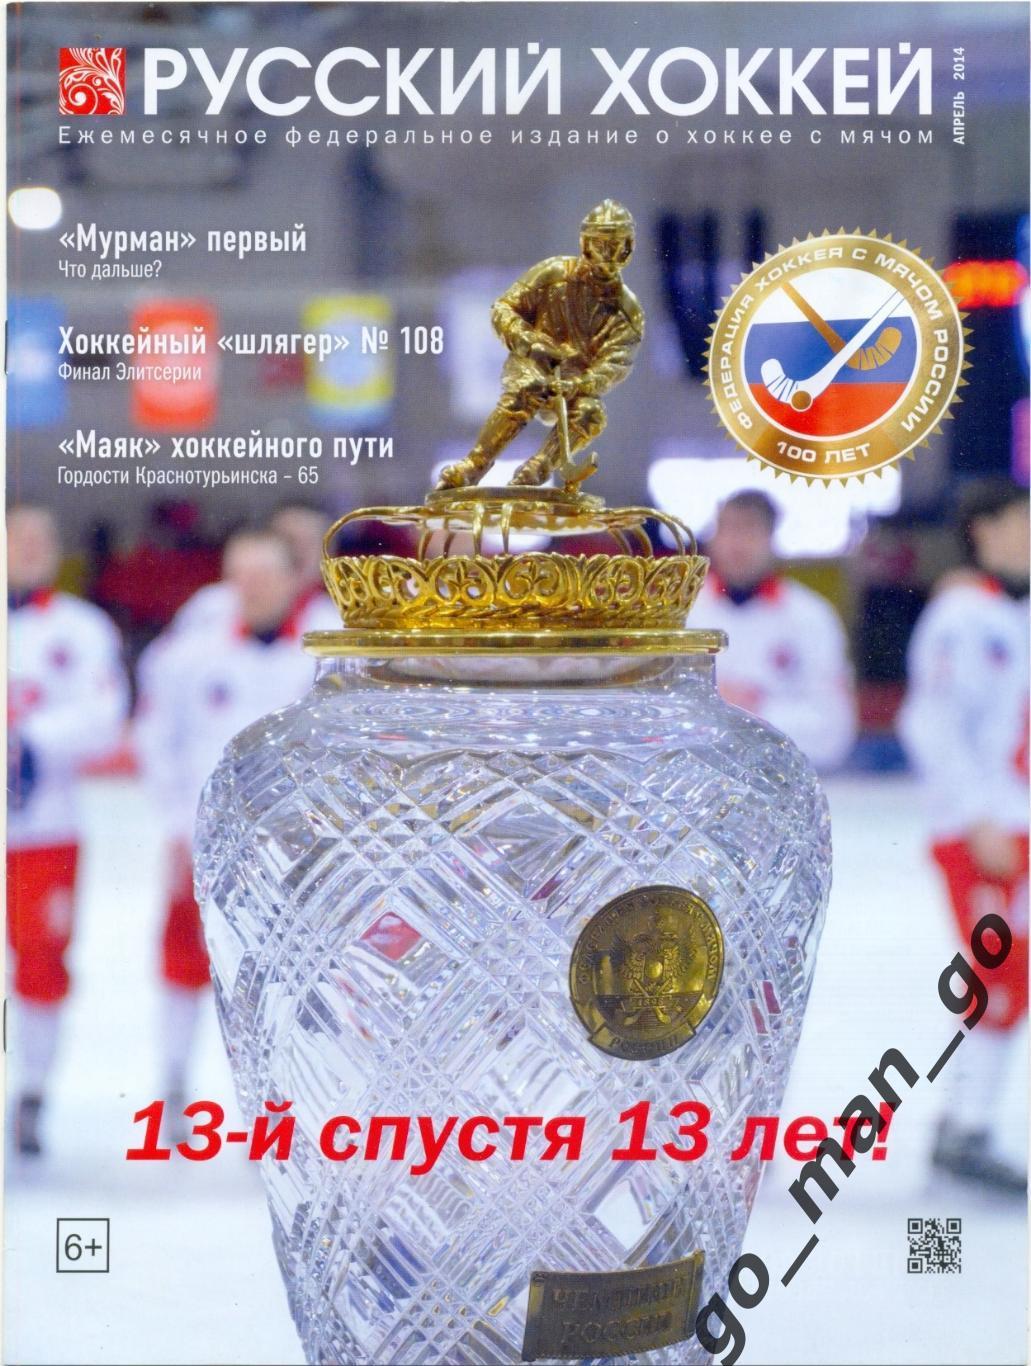 Журнал РУССКИЙ ХОККЕЙ, апрель 2014.